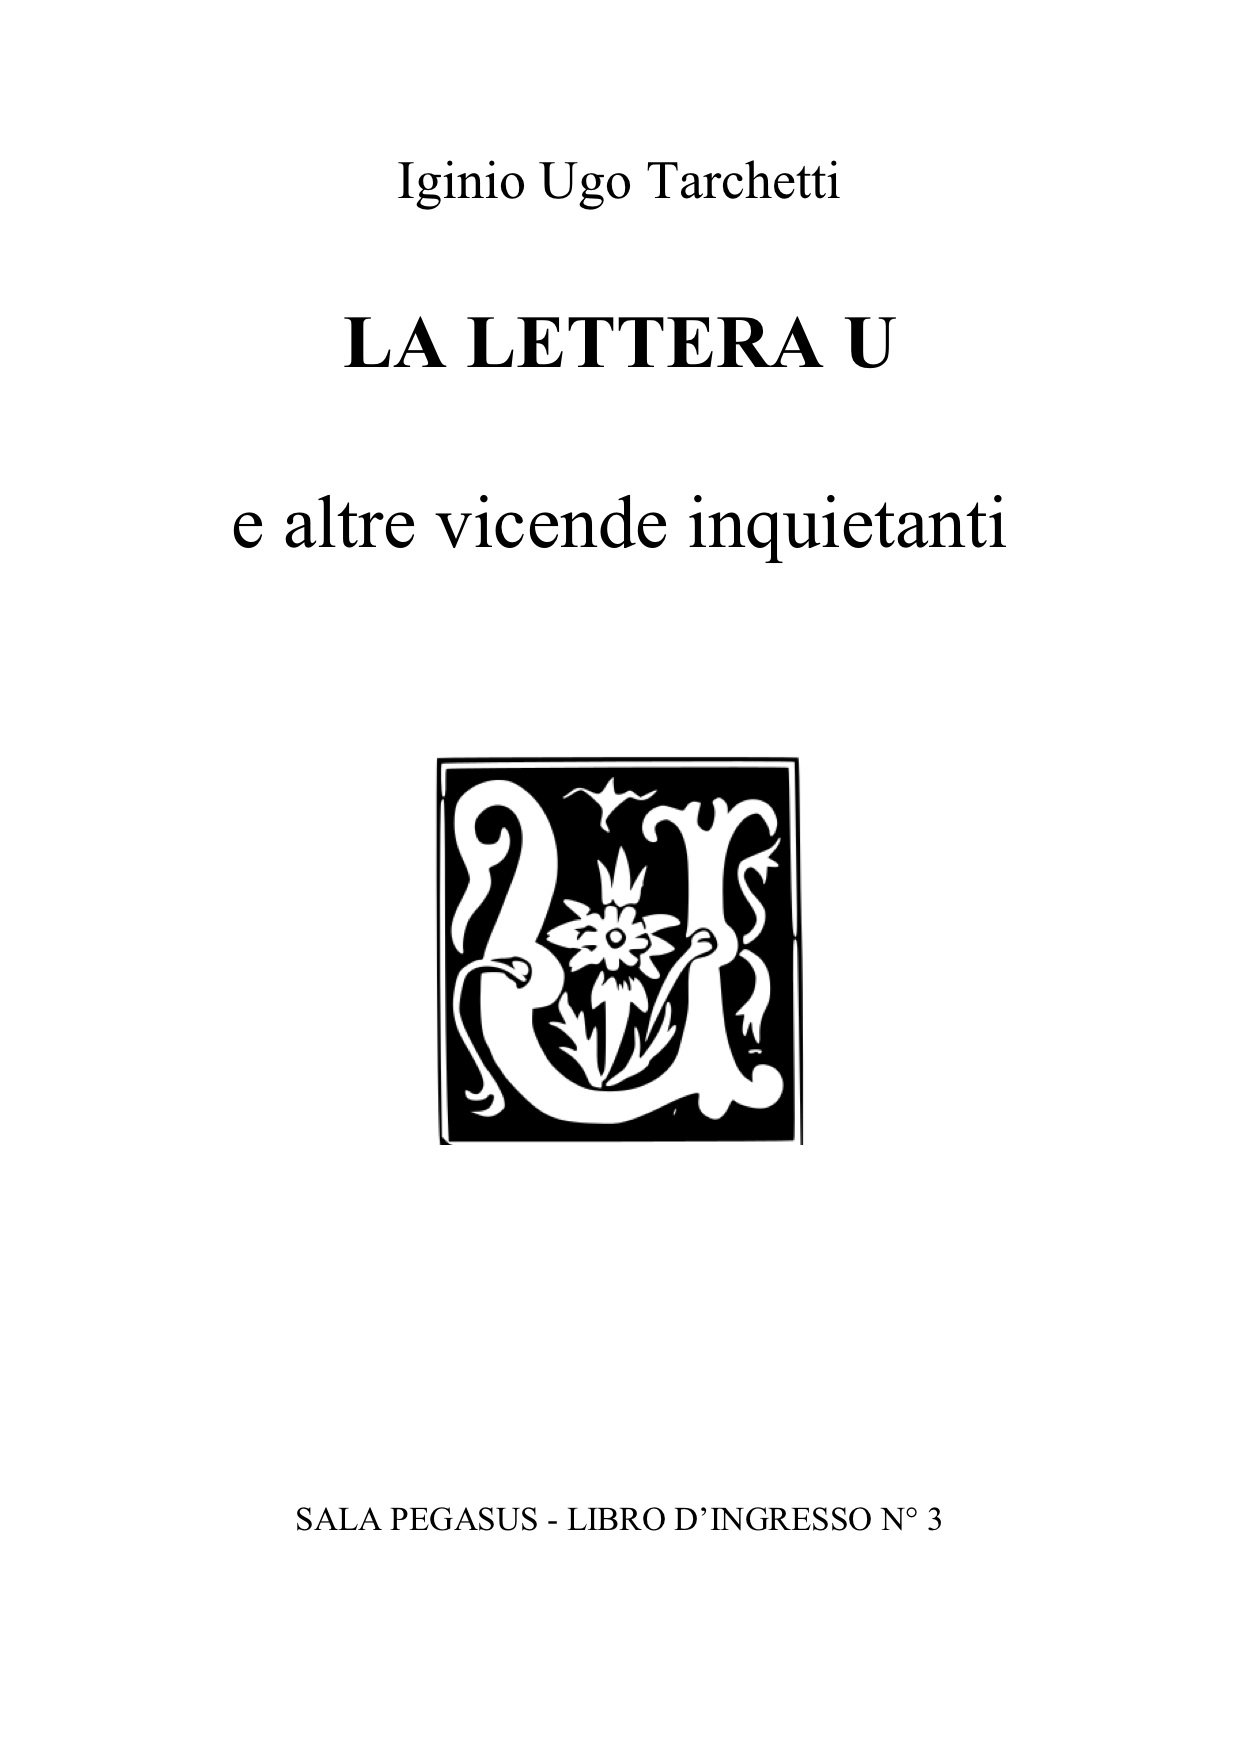 La lettera U – Iginio Ugo Tarchetti